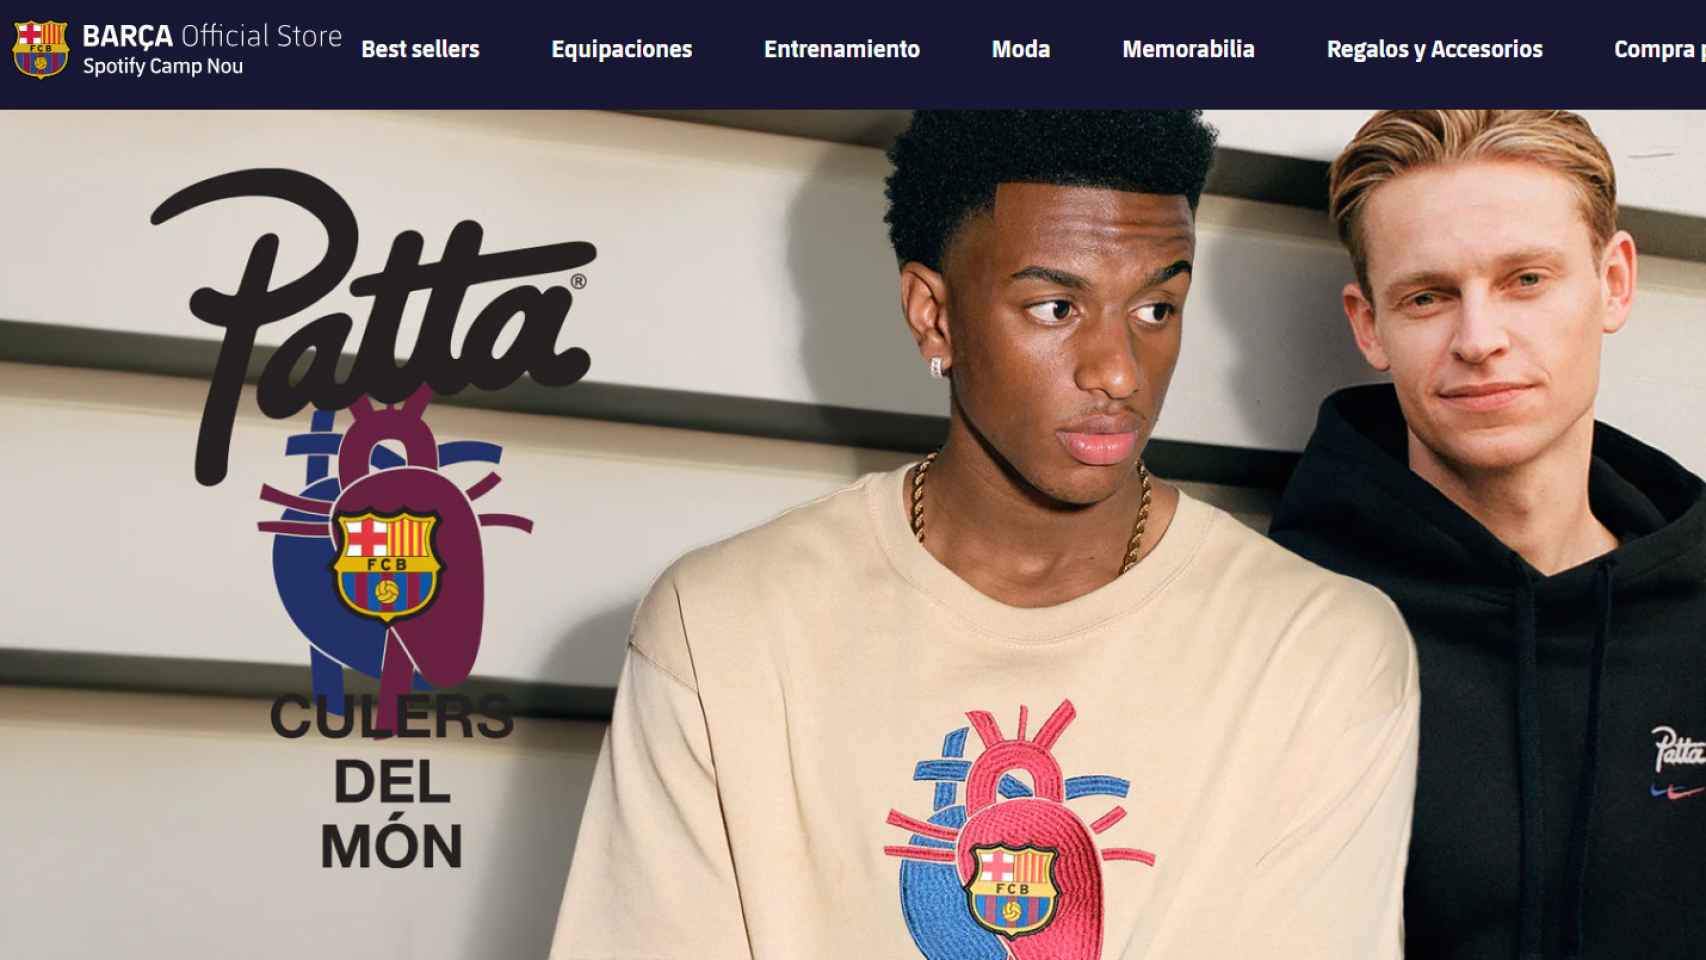 Colaboración 'streetwear' del FC Barcelona con la marca Patta